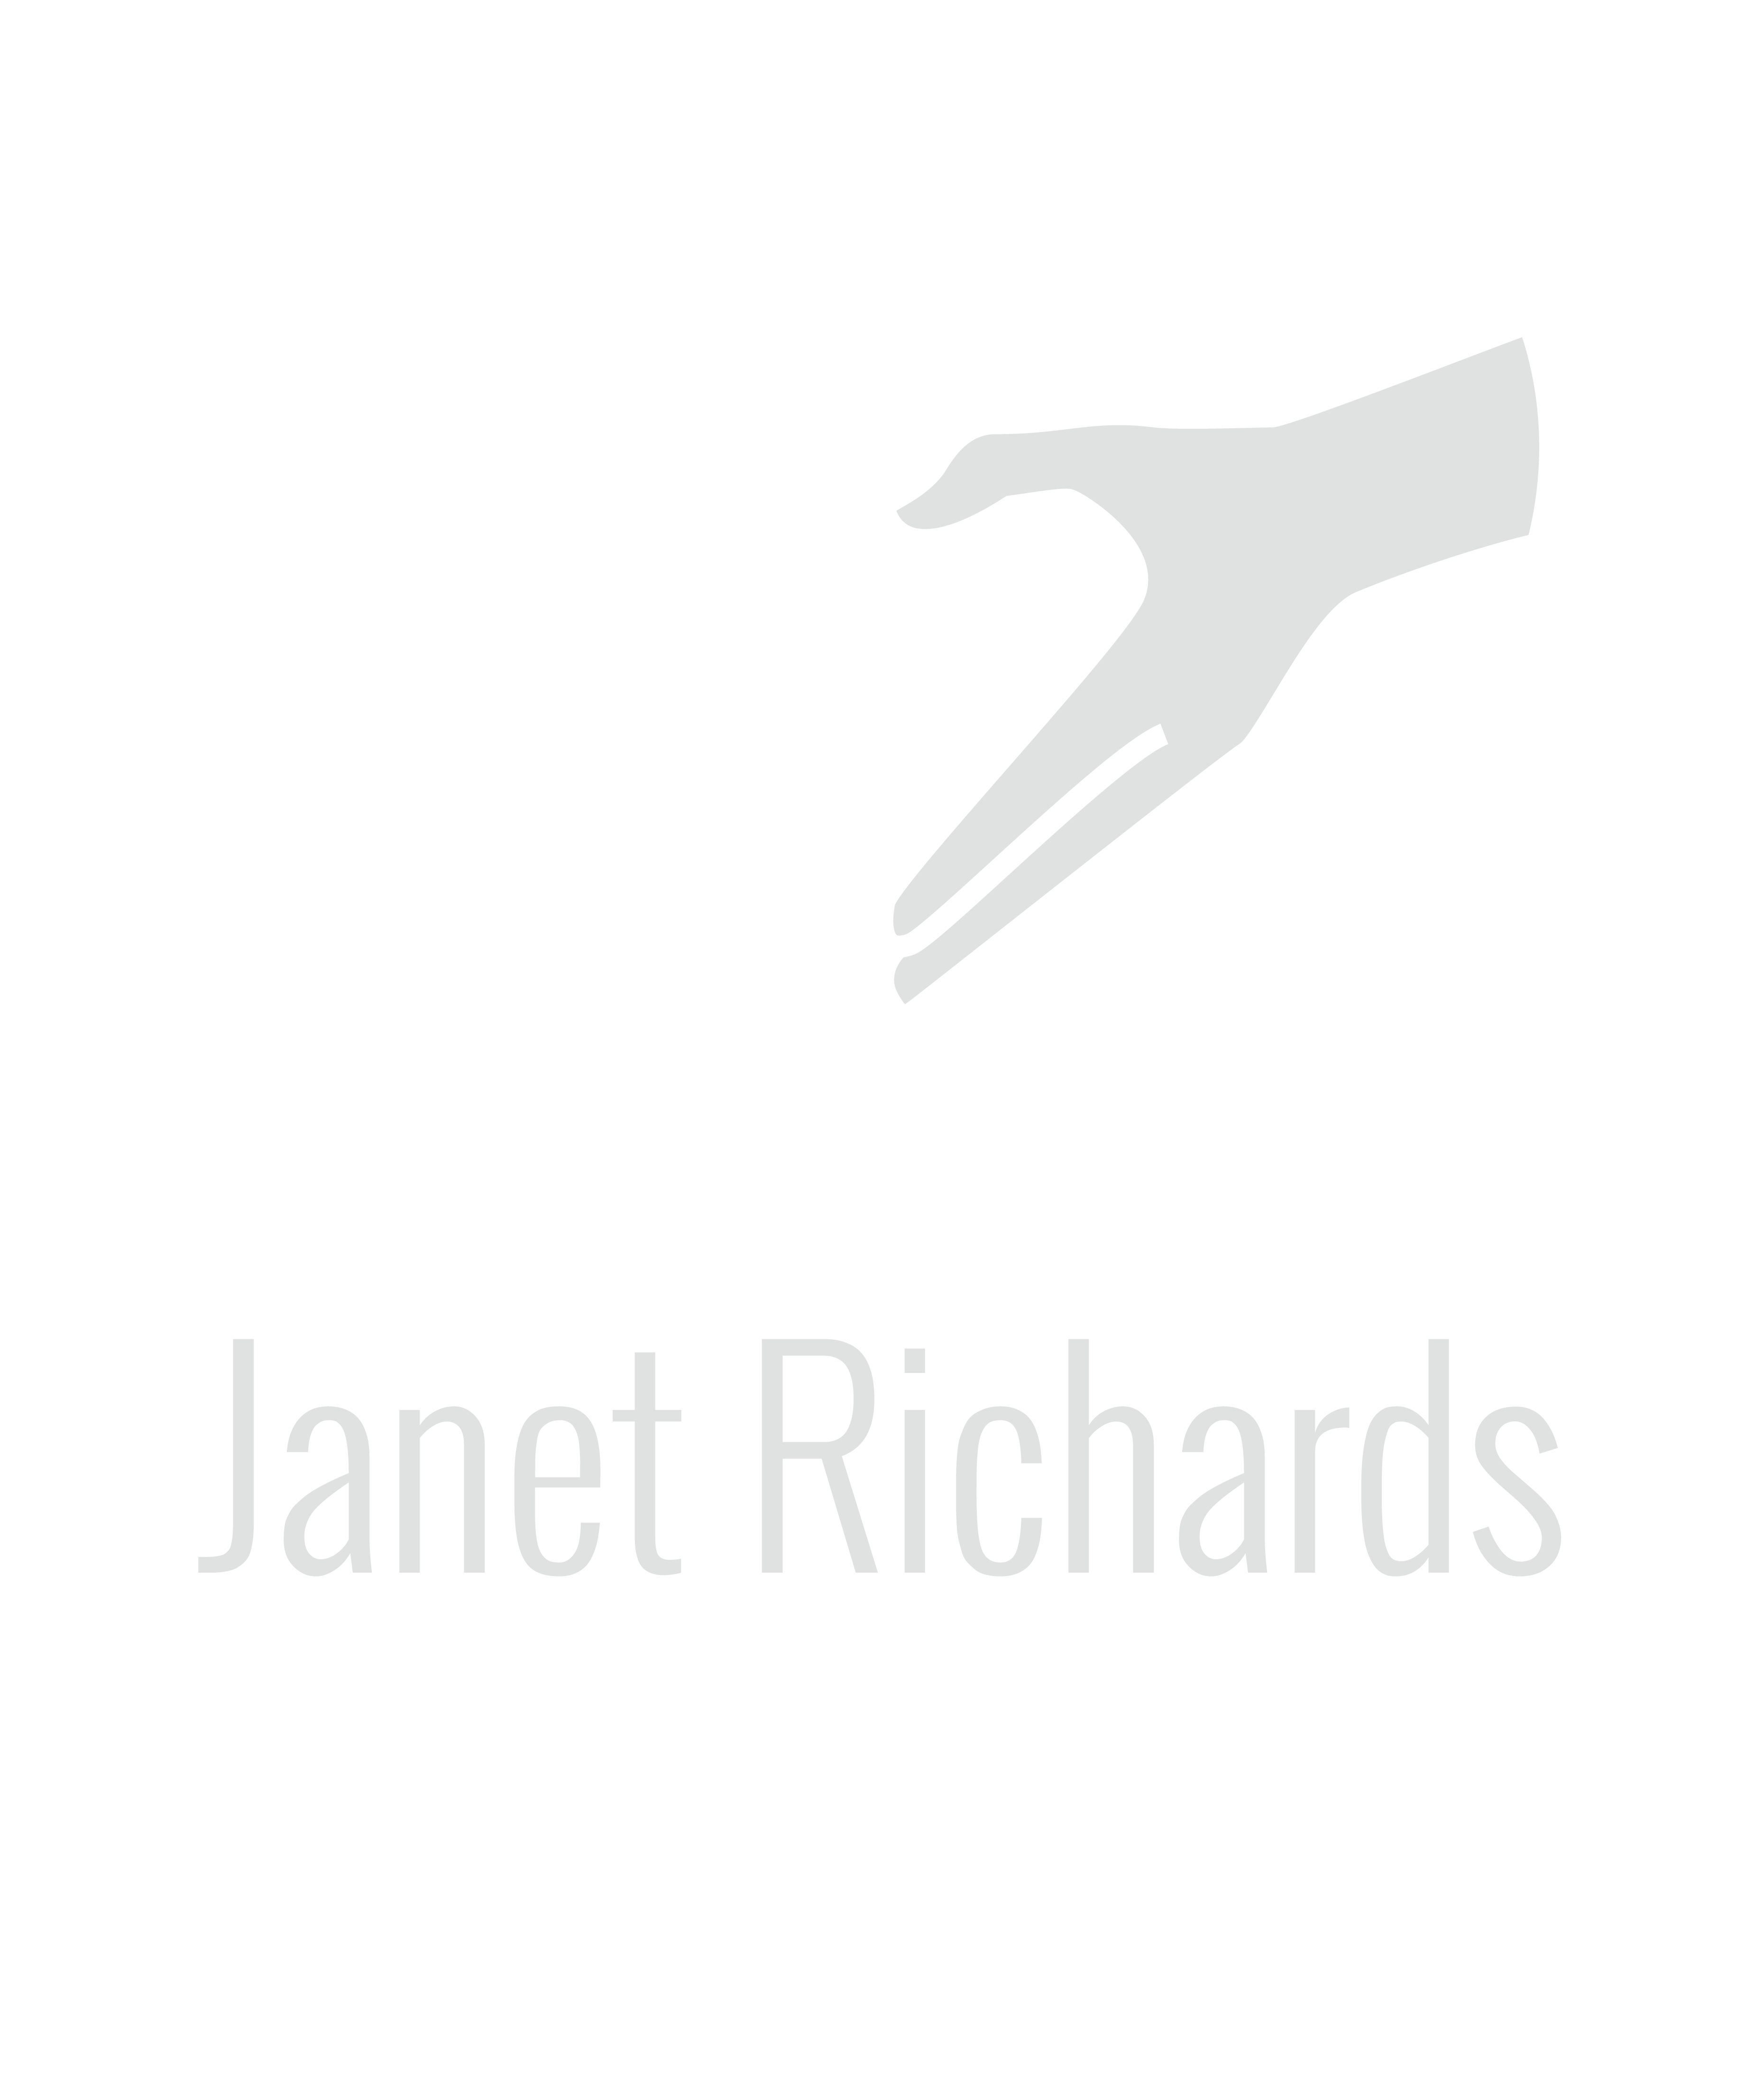 Janet Richards Foundation